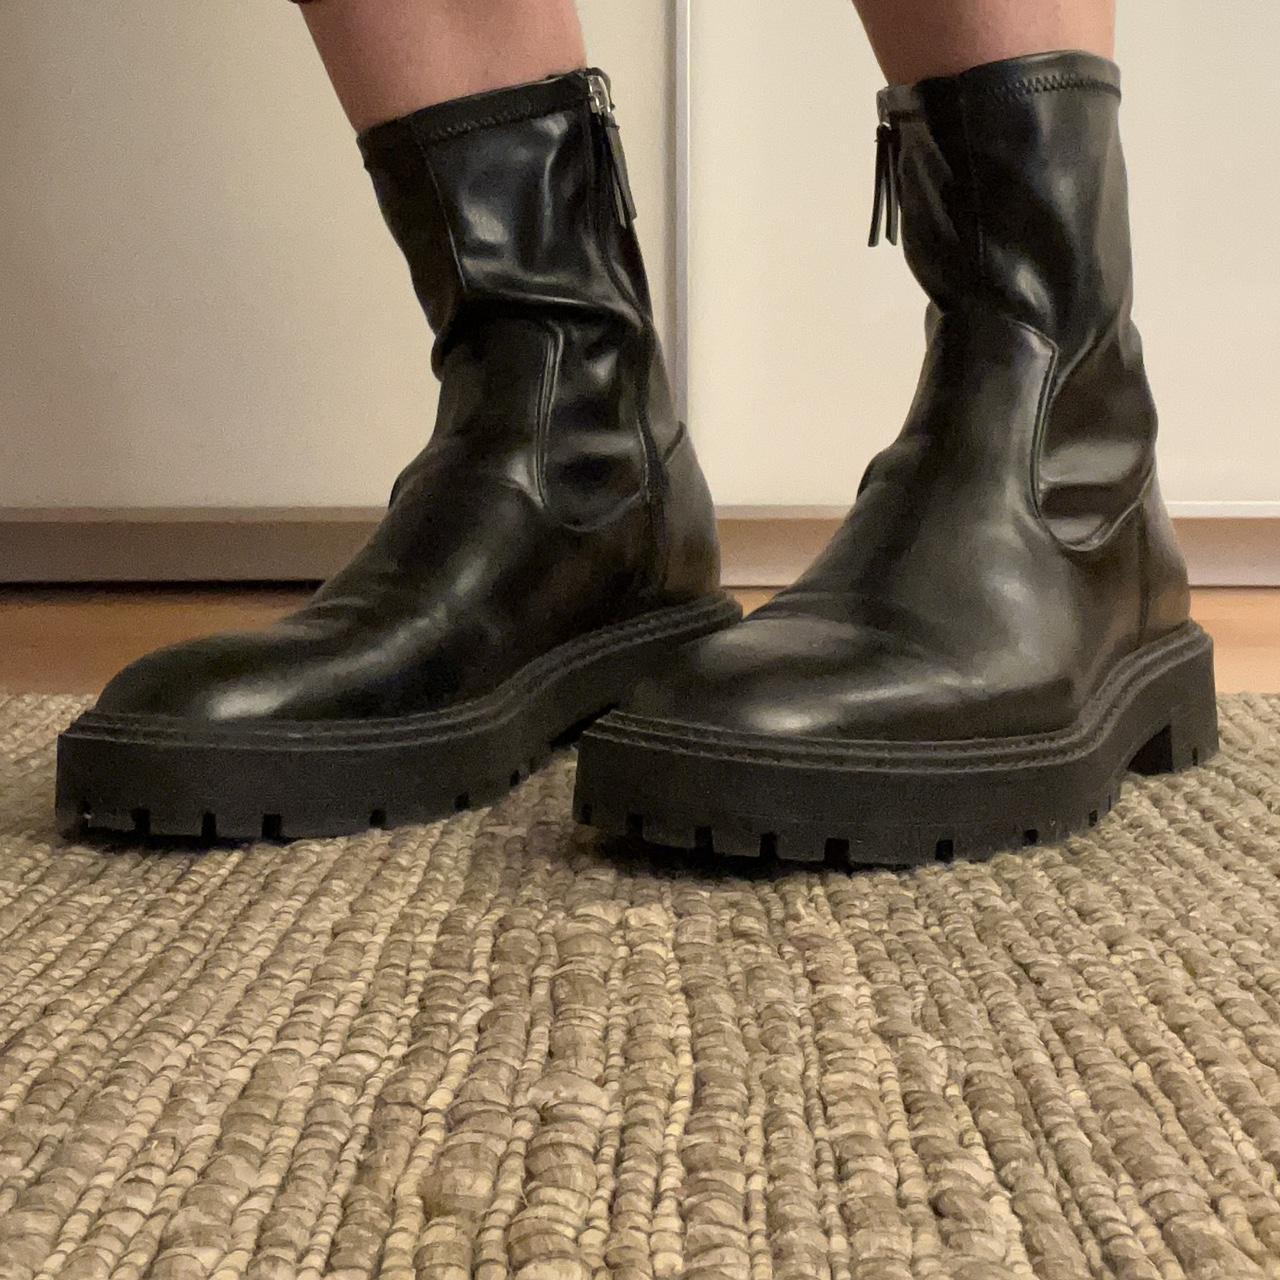 Zara black leather lug sole boots. Worn a few... - Depop